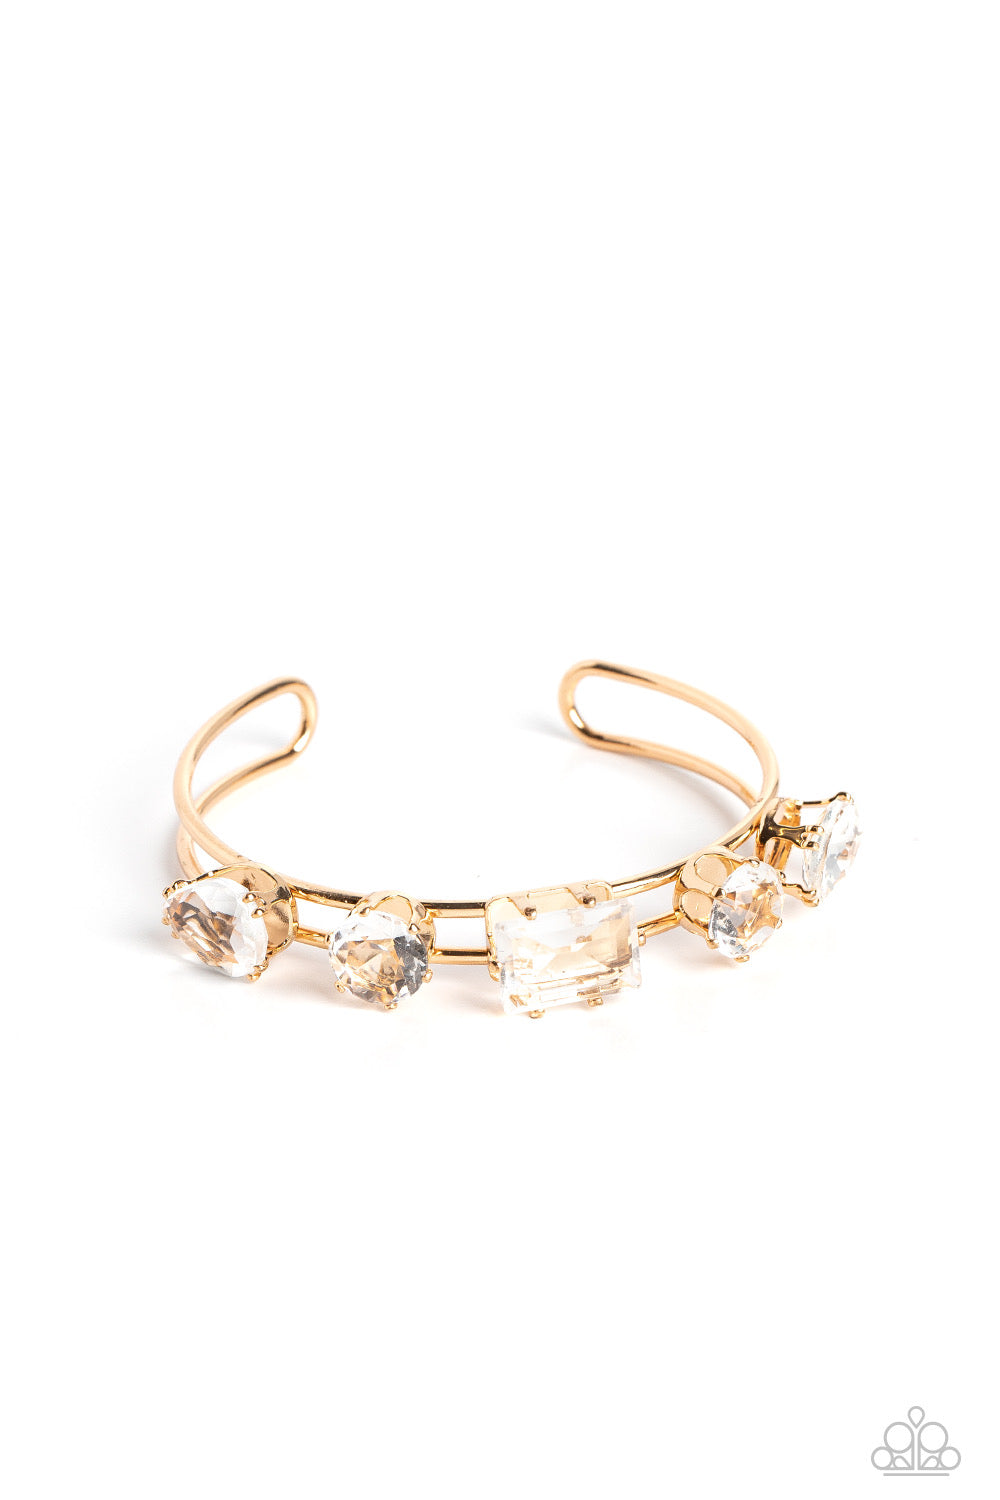 Cute Bracelets - Paparazzi Uniquely Untapped - Gold Bracelet - Paparazzi Jewelry Images 